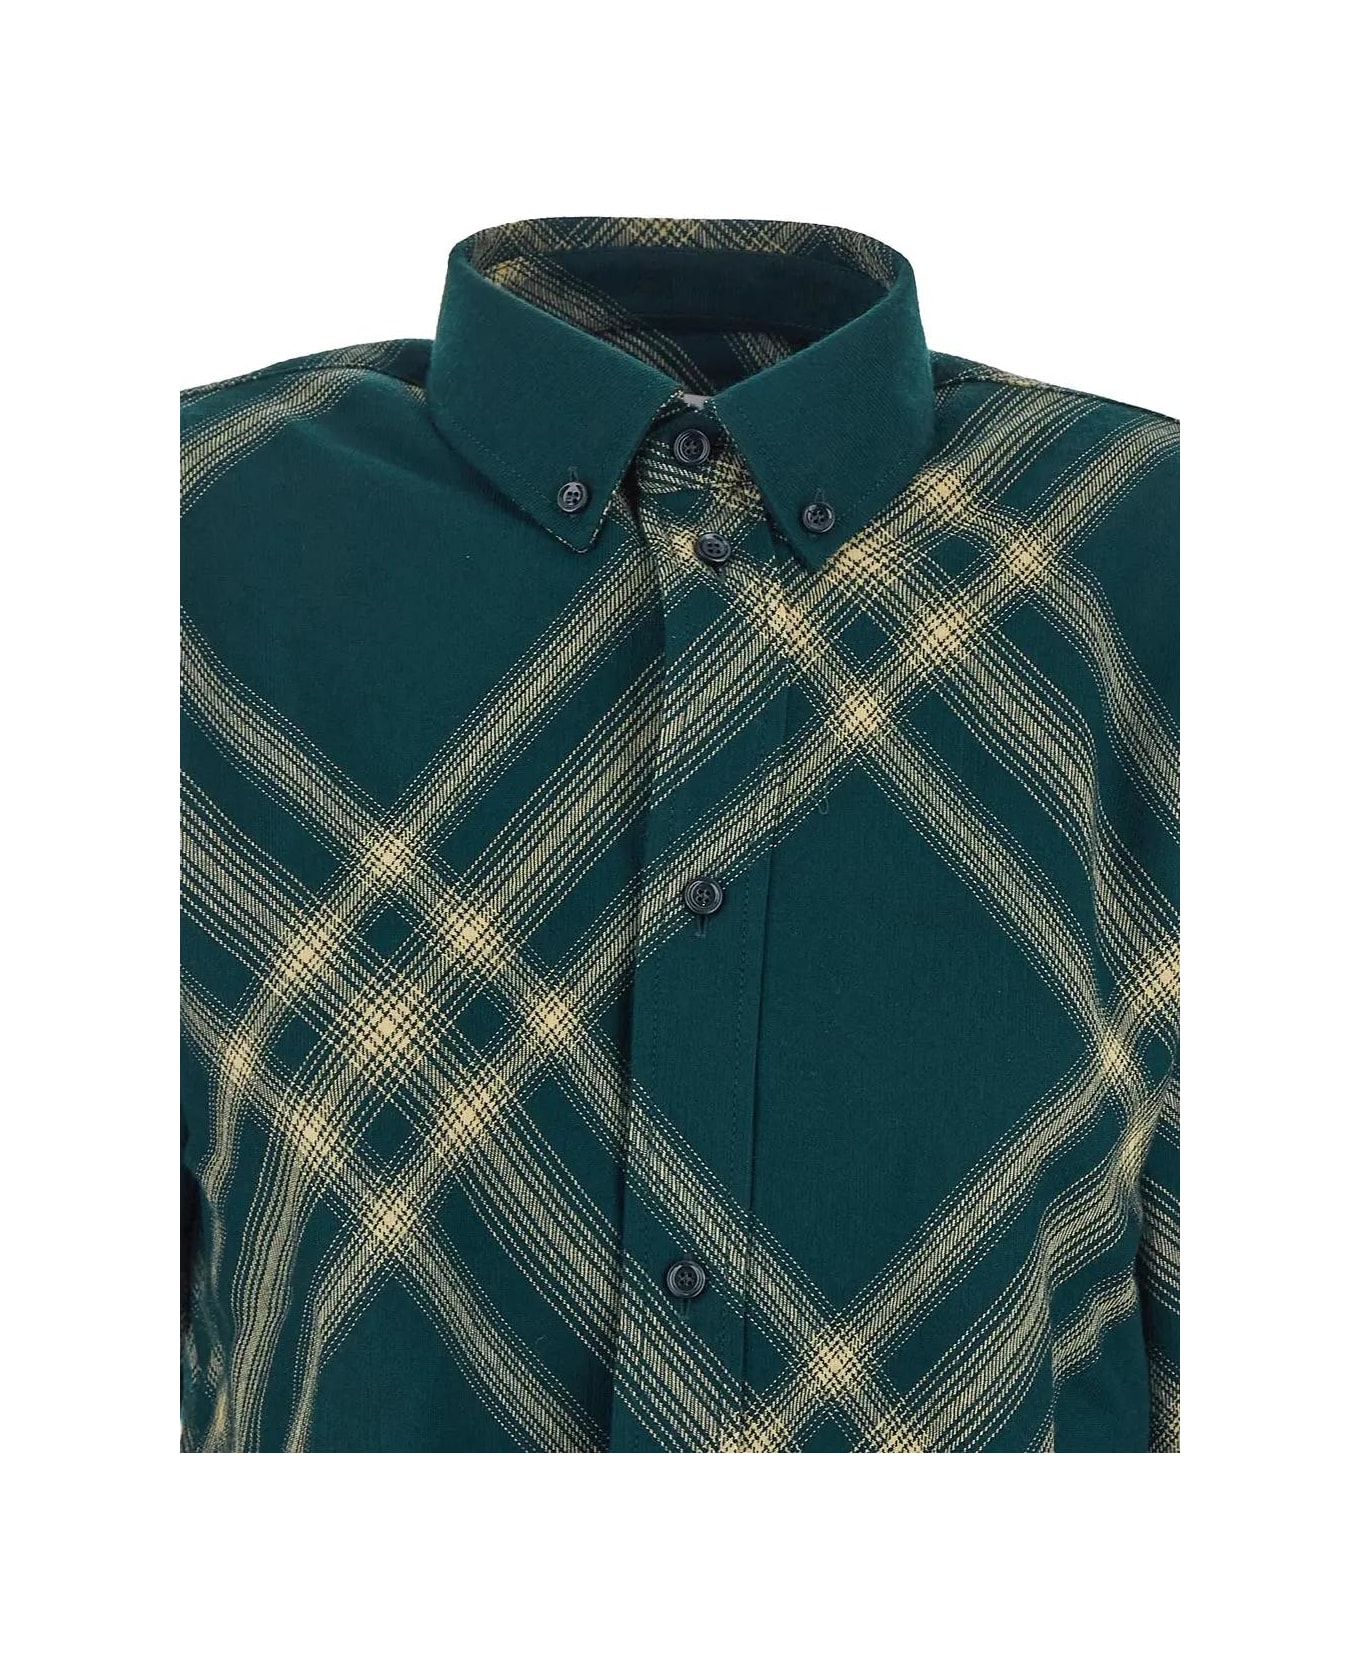 Burberry Tartan Shirt - GREEN